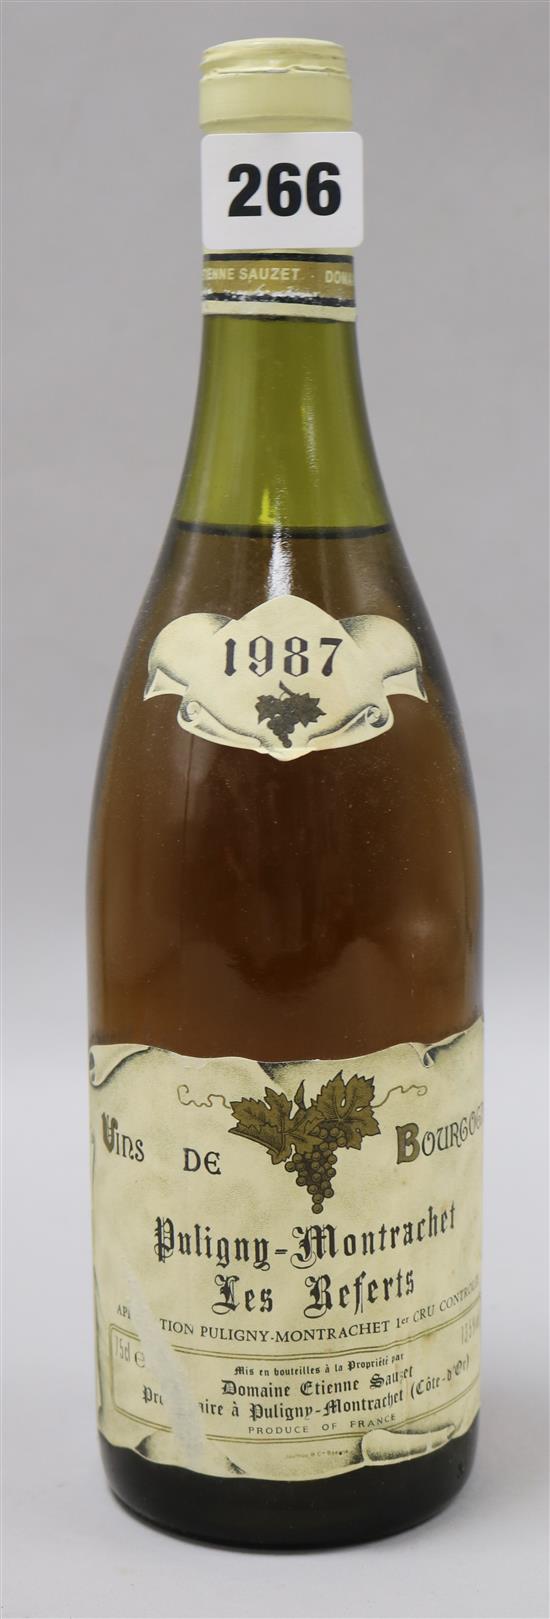 Twelve bottles of Etienne Sauzet-Puligny Montrachet 1987